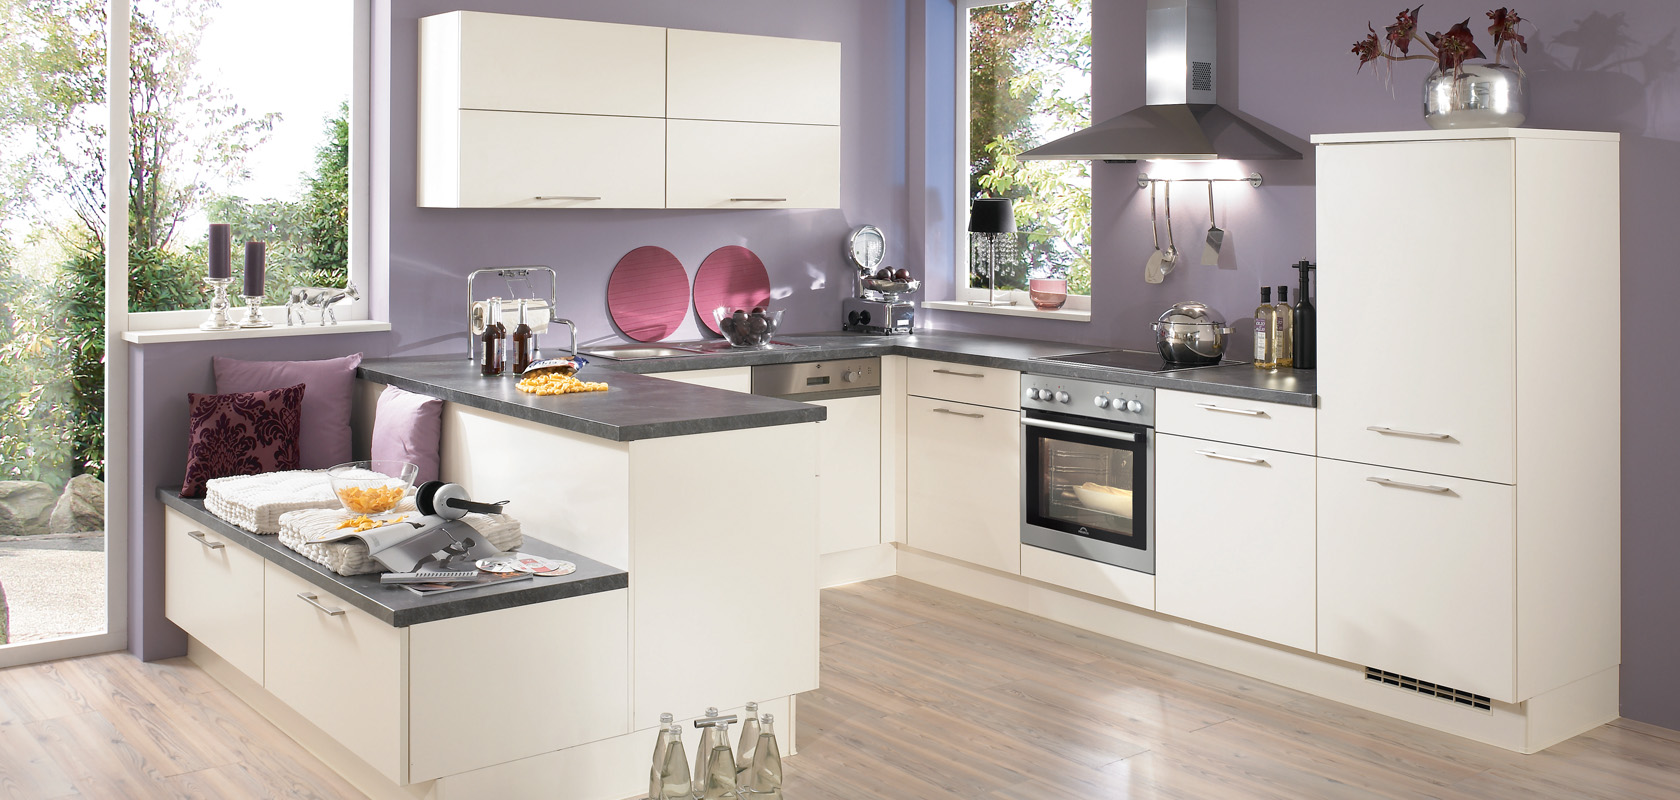 Moderne keuken met strakke witte kasten, donkere werkbladen en roestvrijstalen apparaten, aangevuld met natuurlijk licht en een knusse eethoek.